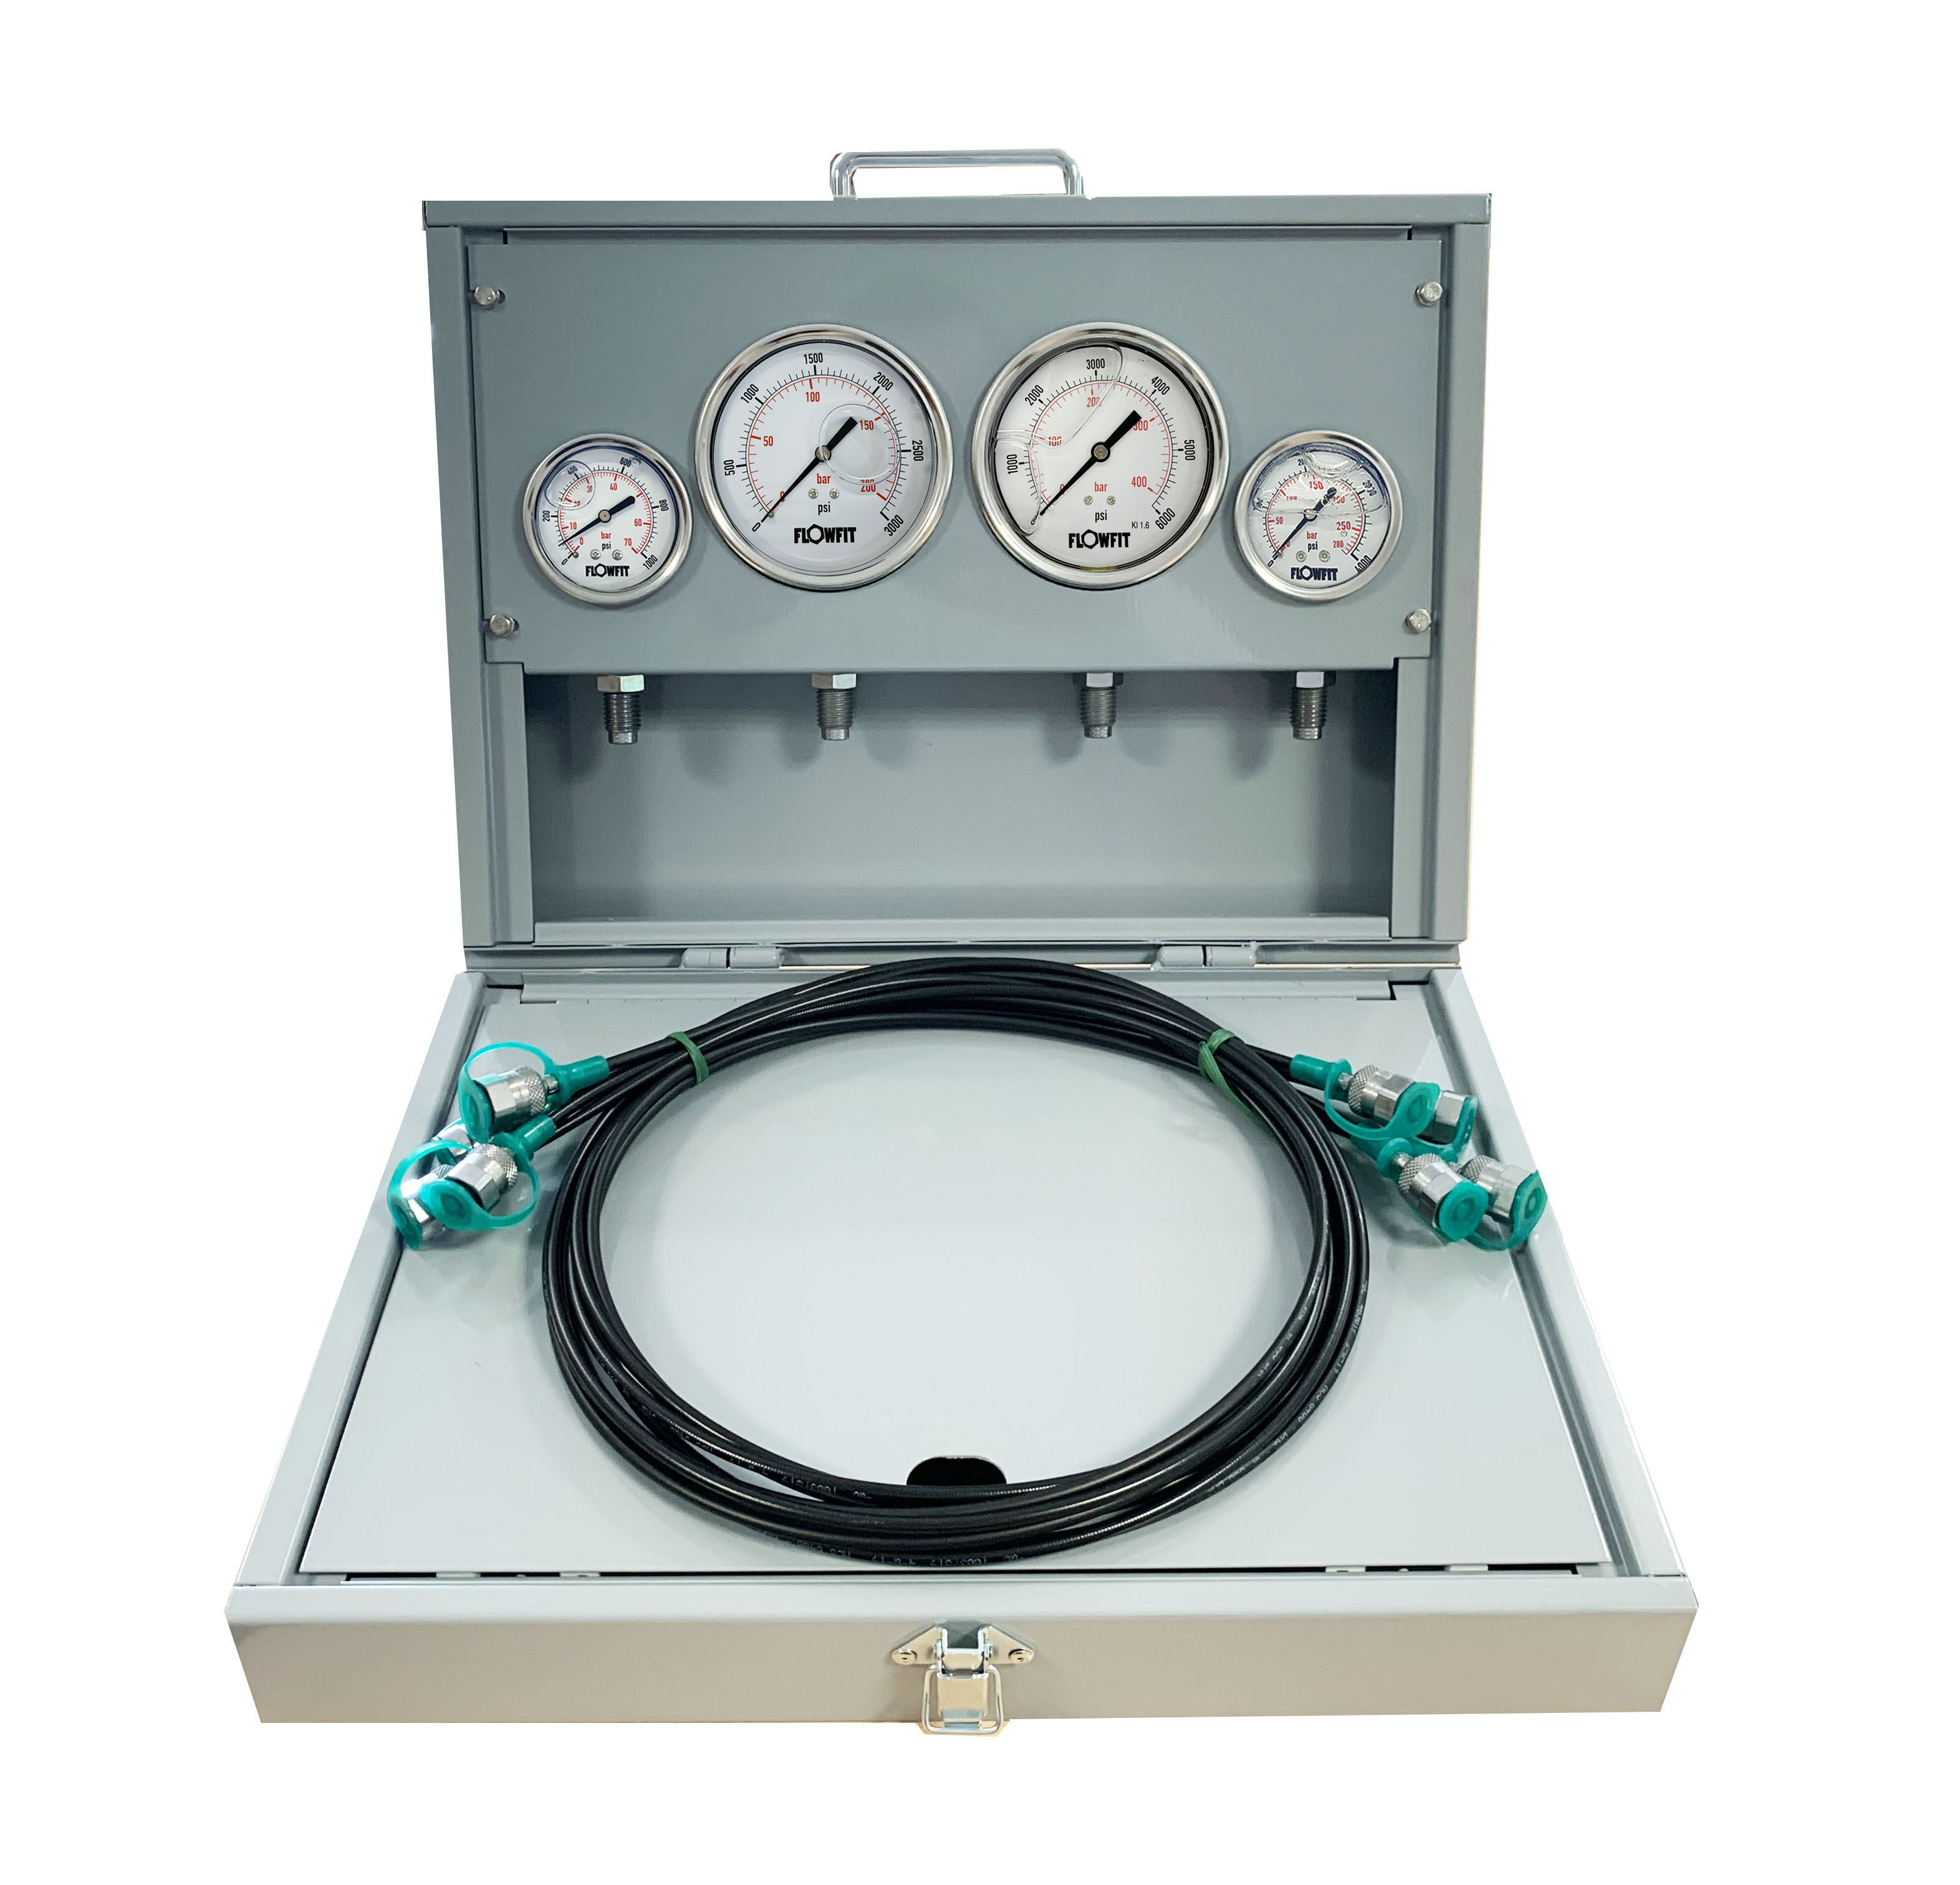 Flowfit Metal Pressure Test Kit, 2 X 63mm & 2 X 100mm Pressure Gauges & 4 X Micro Hose